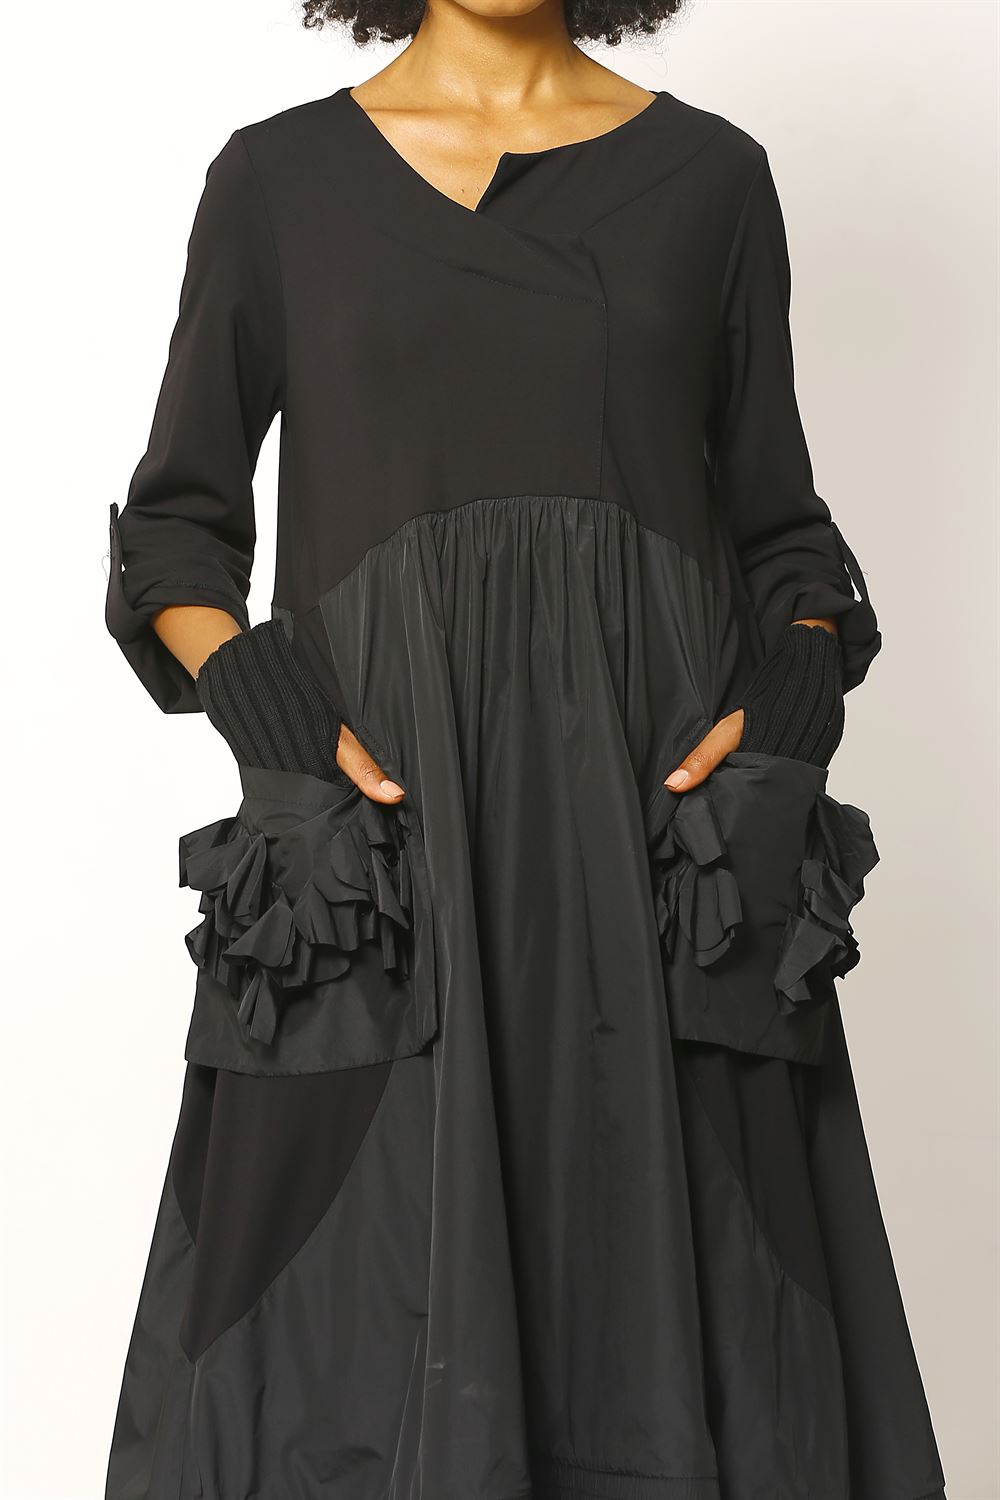 Cepleri Çiçek Detaylı Örme Tafta Elbise - Siyah